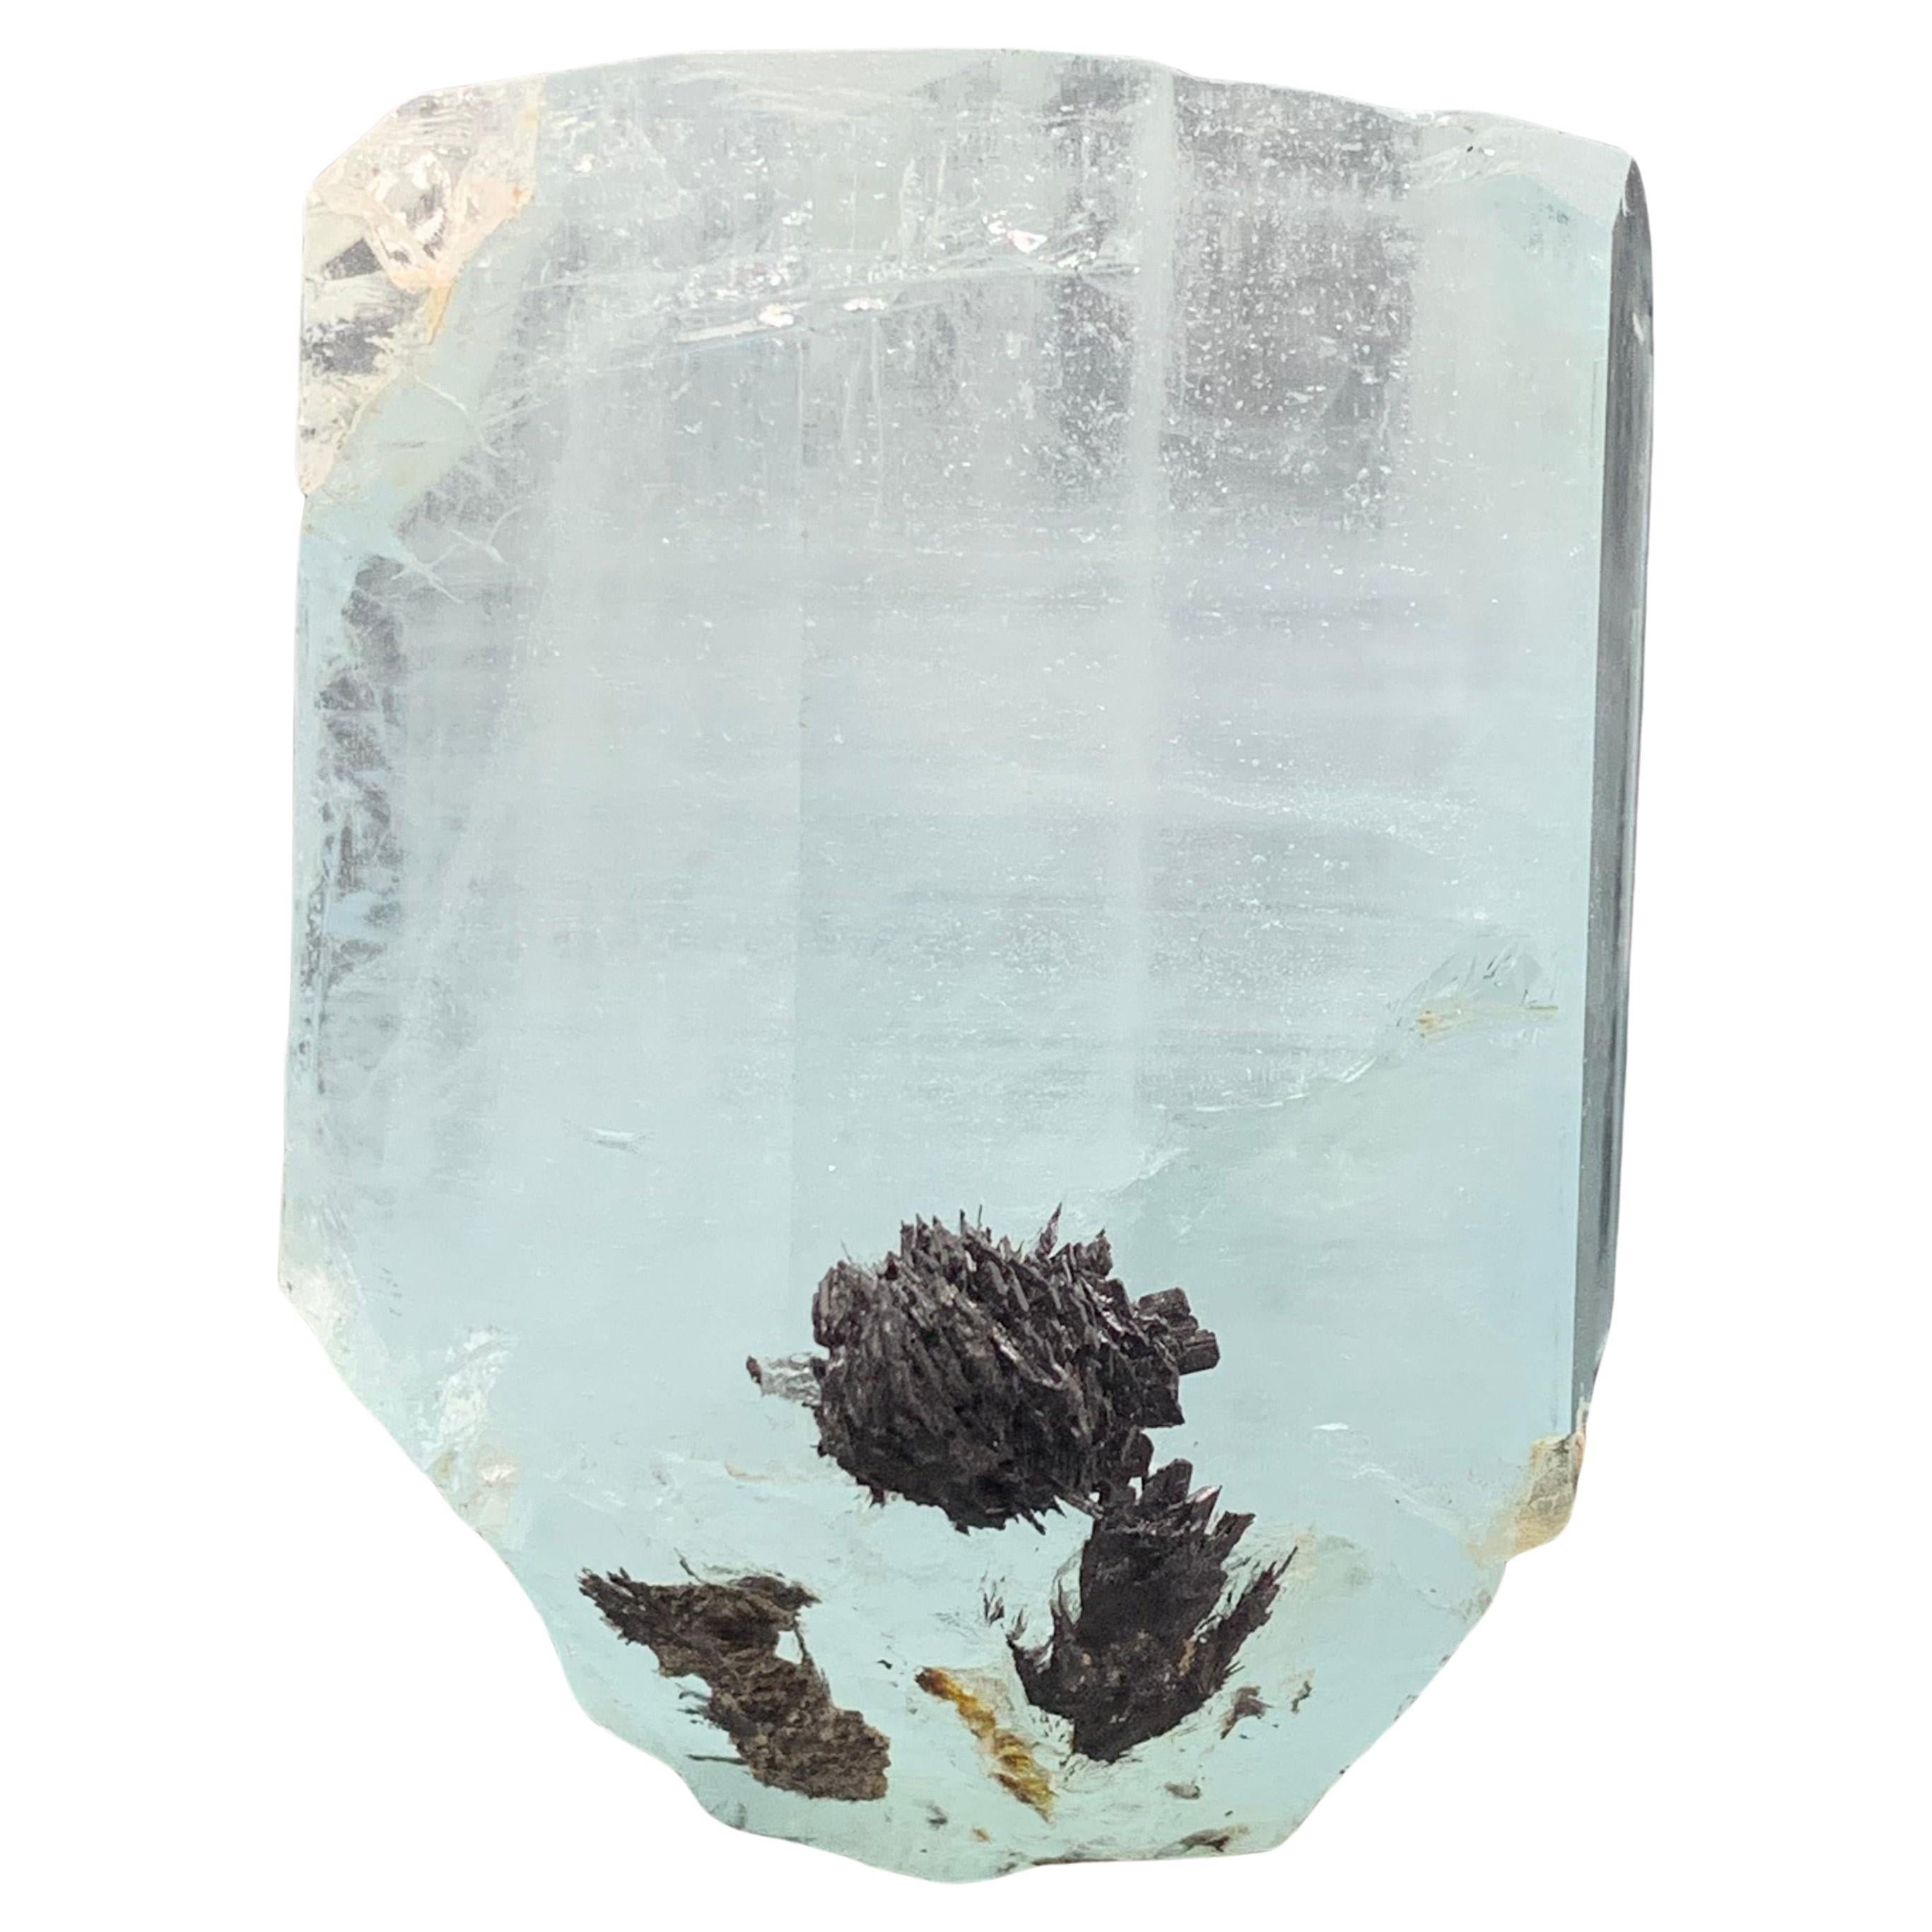 207.25 Gram Aquamarine Specimen With Schorl From Shigar Valley, Skardu, Pakistan